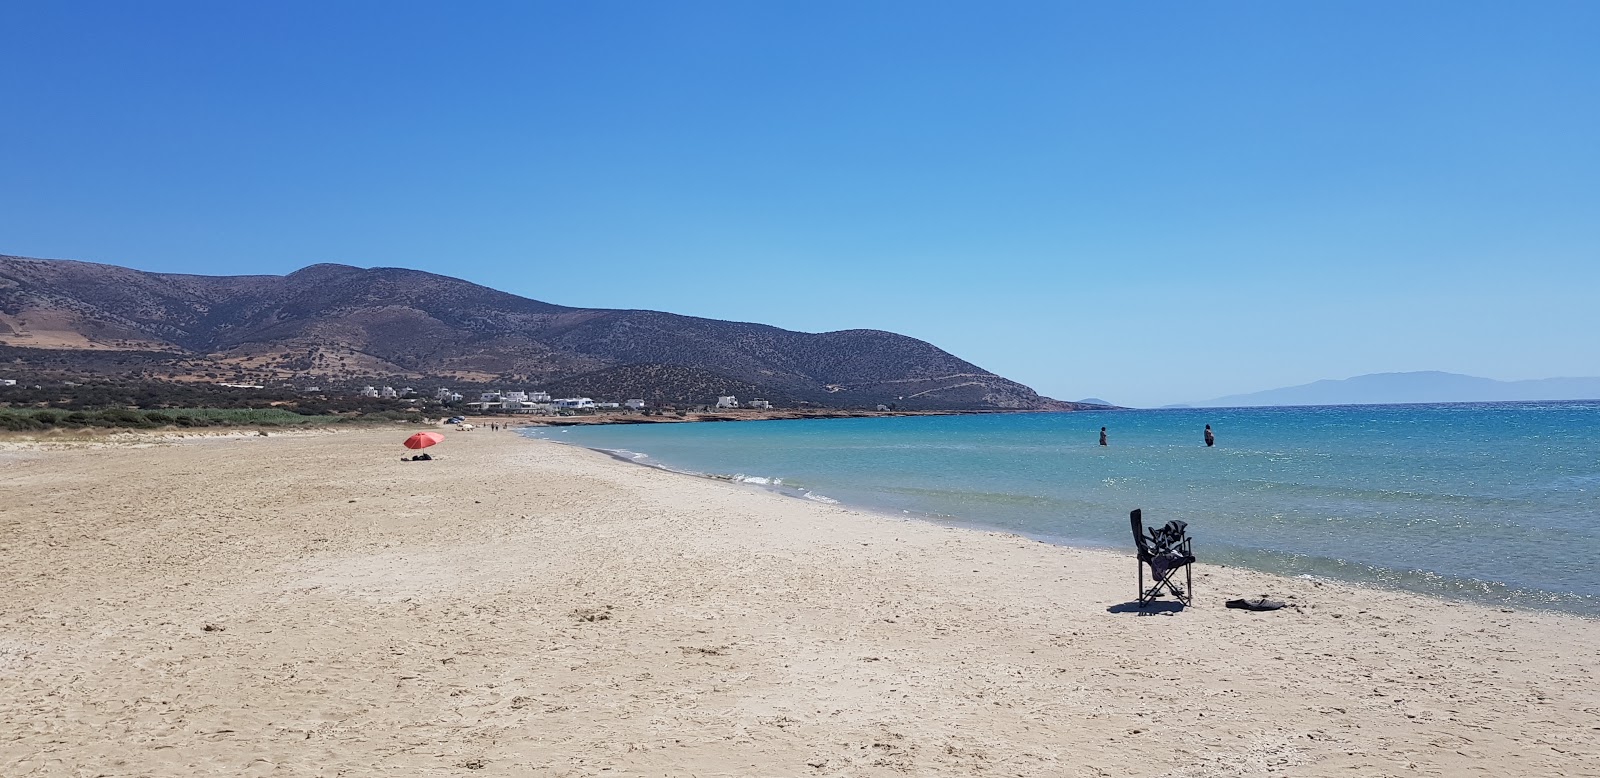 Foto de Playa de Agiassos con playa amplia